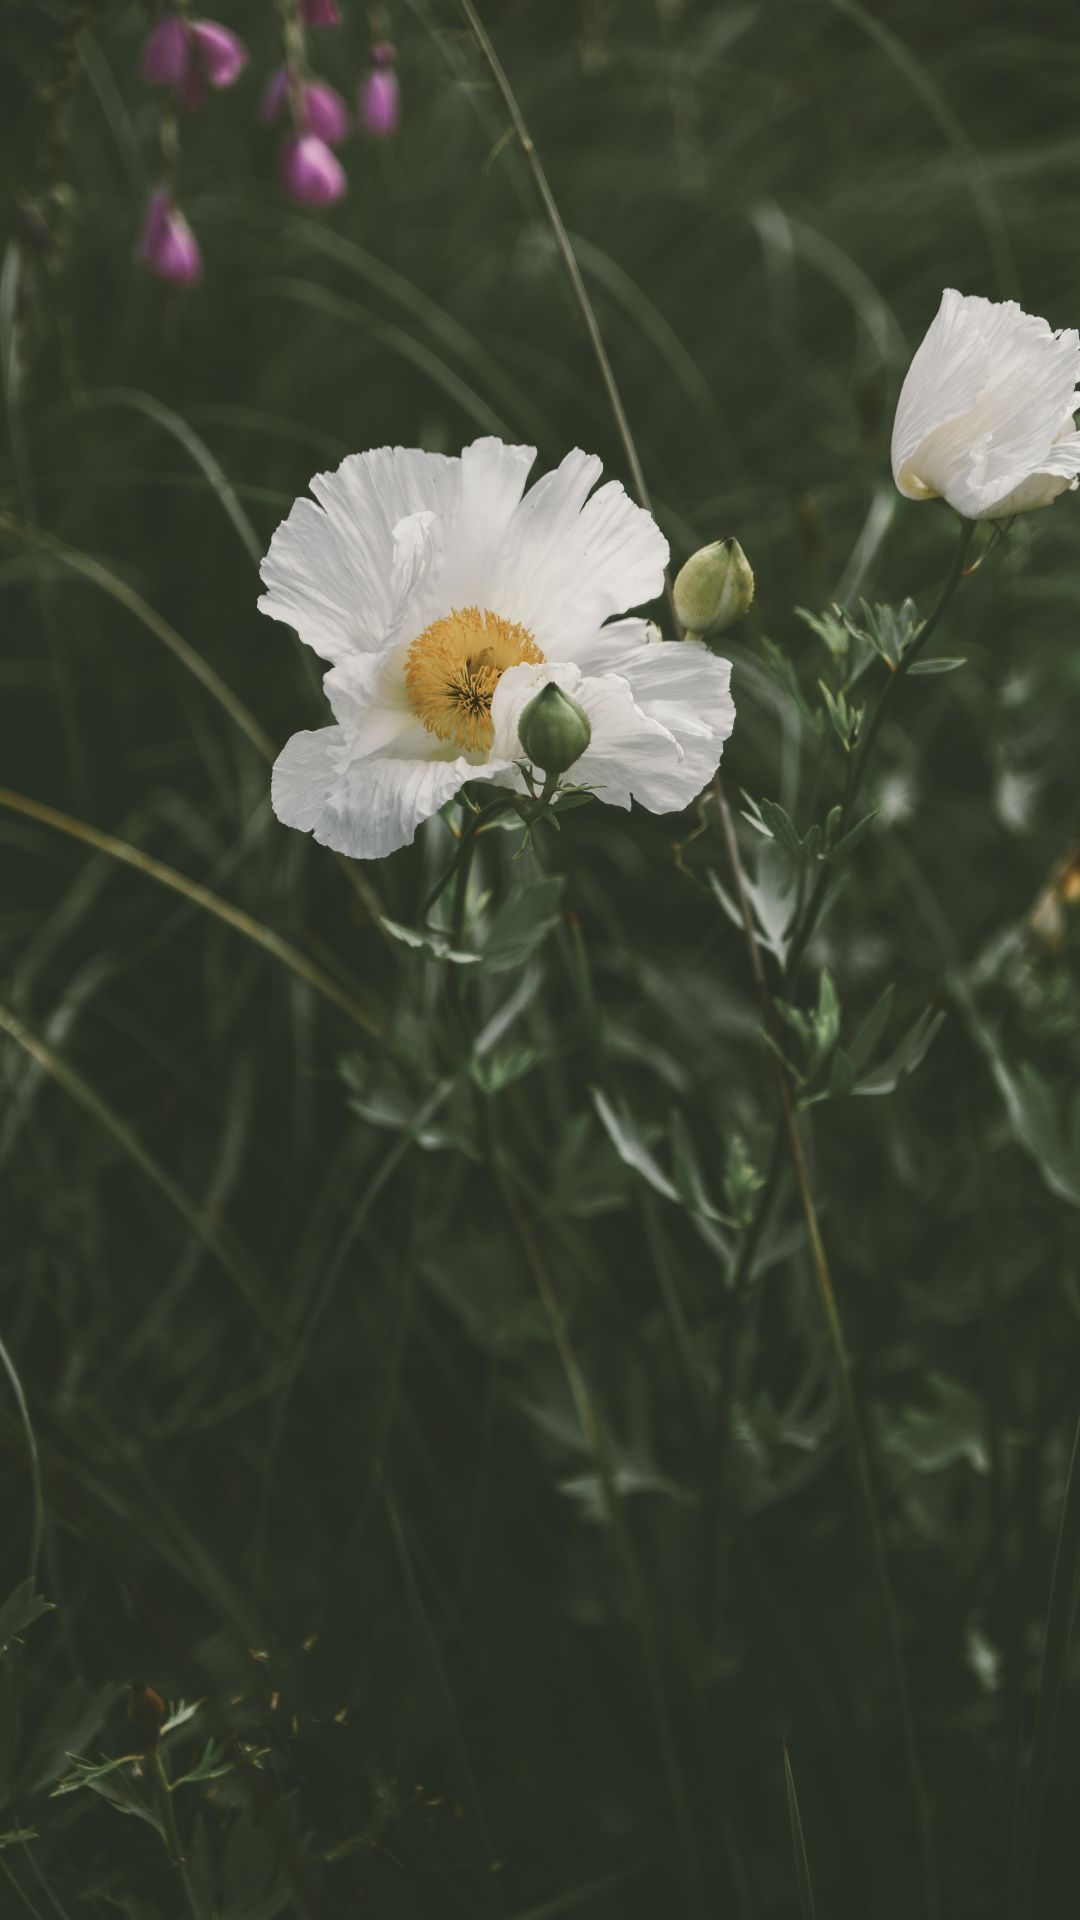 White Poppy, Beautiful flower, Nature's beauty, Retina HD, 1080x1920 Full HD Handy